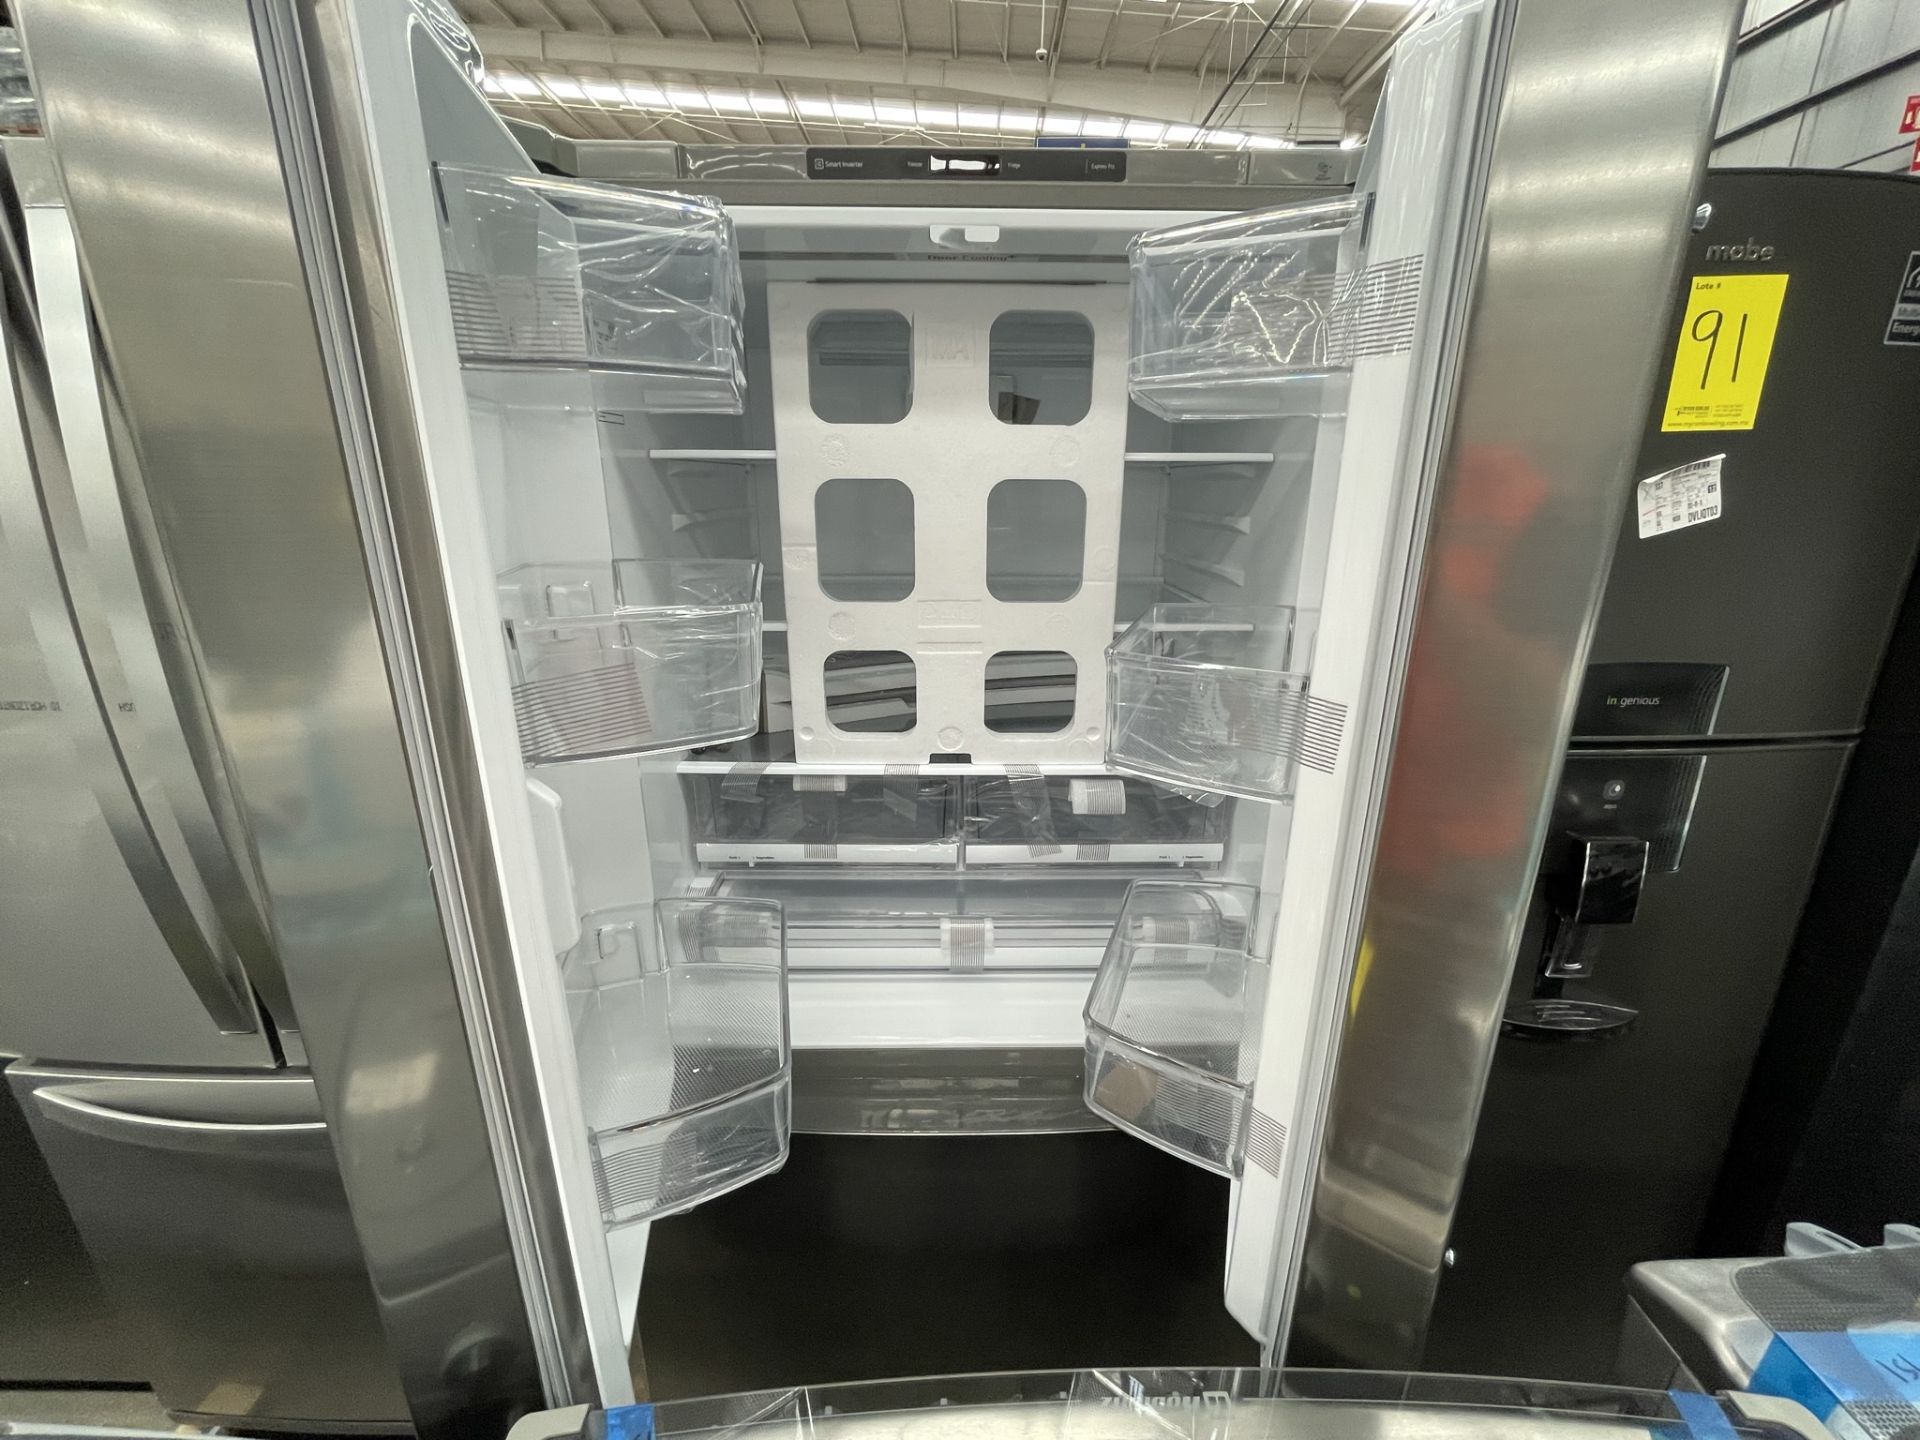 (EQUIPO NUEVO) 1 Refrigerador Marca LG, Modelo GTM29BP, Serie V24961, Color GRIS, LB-619780; (Nuevo - Image 7 of 9